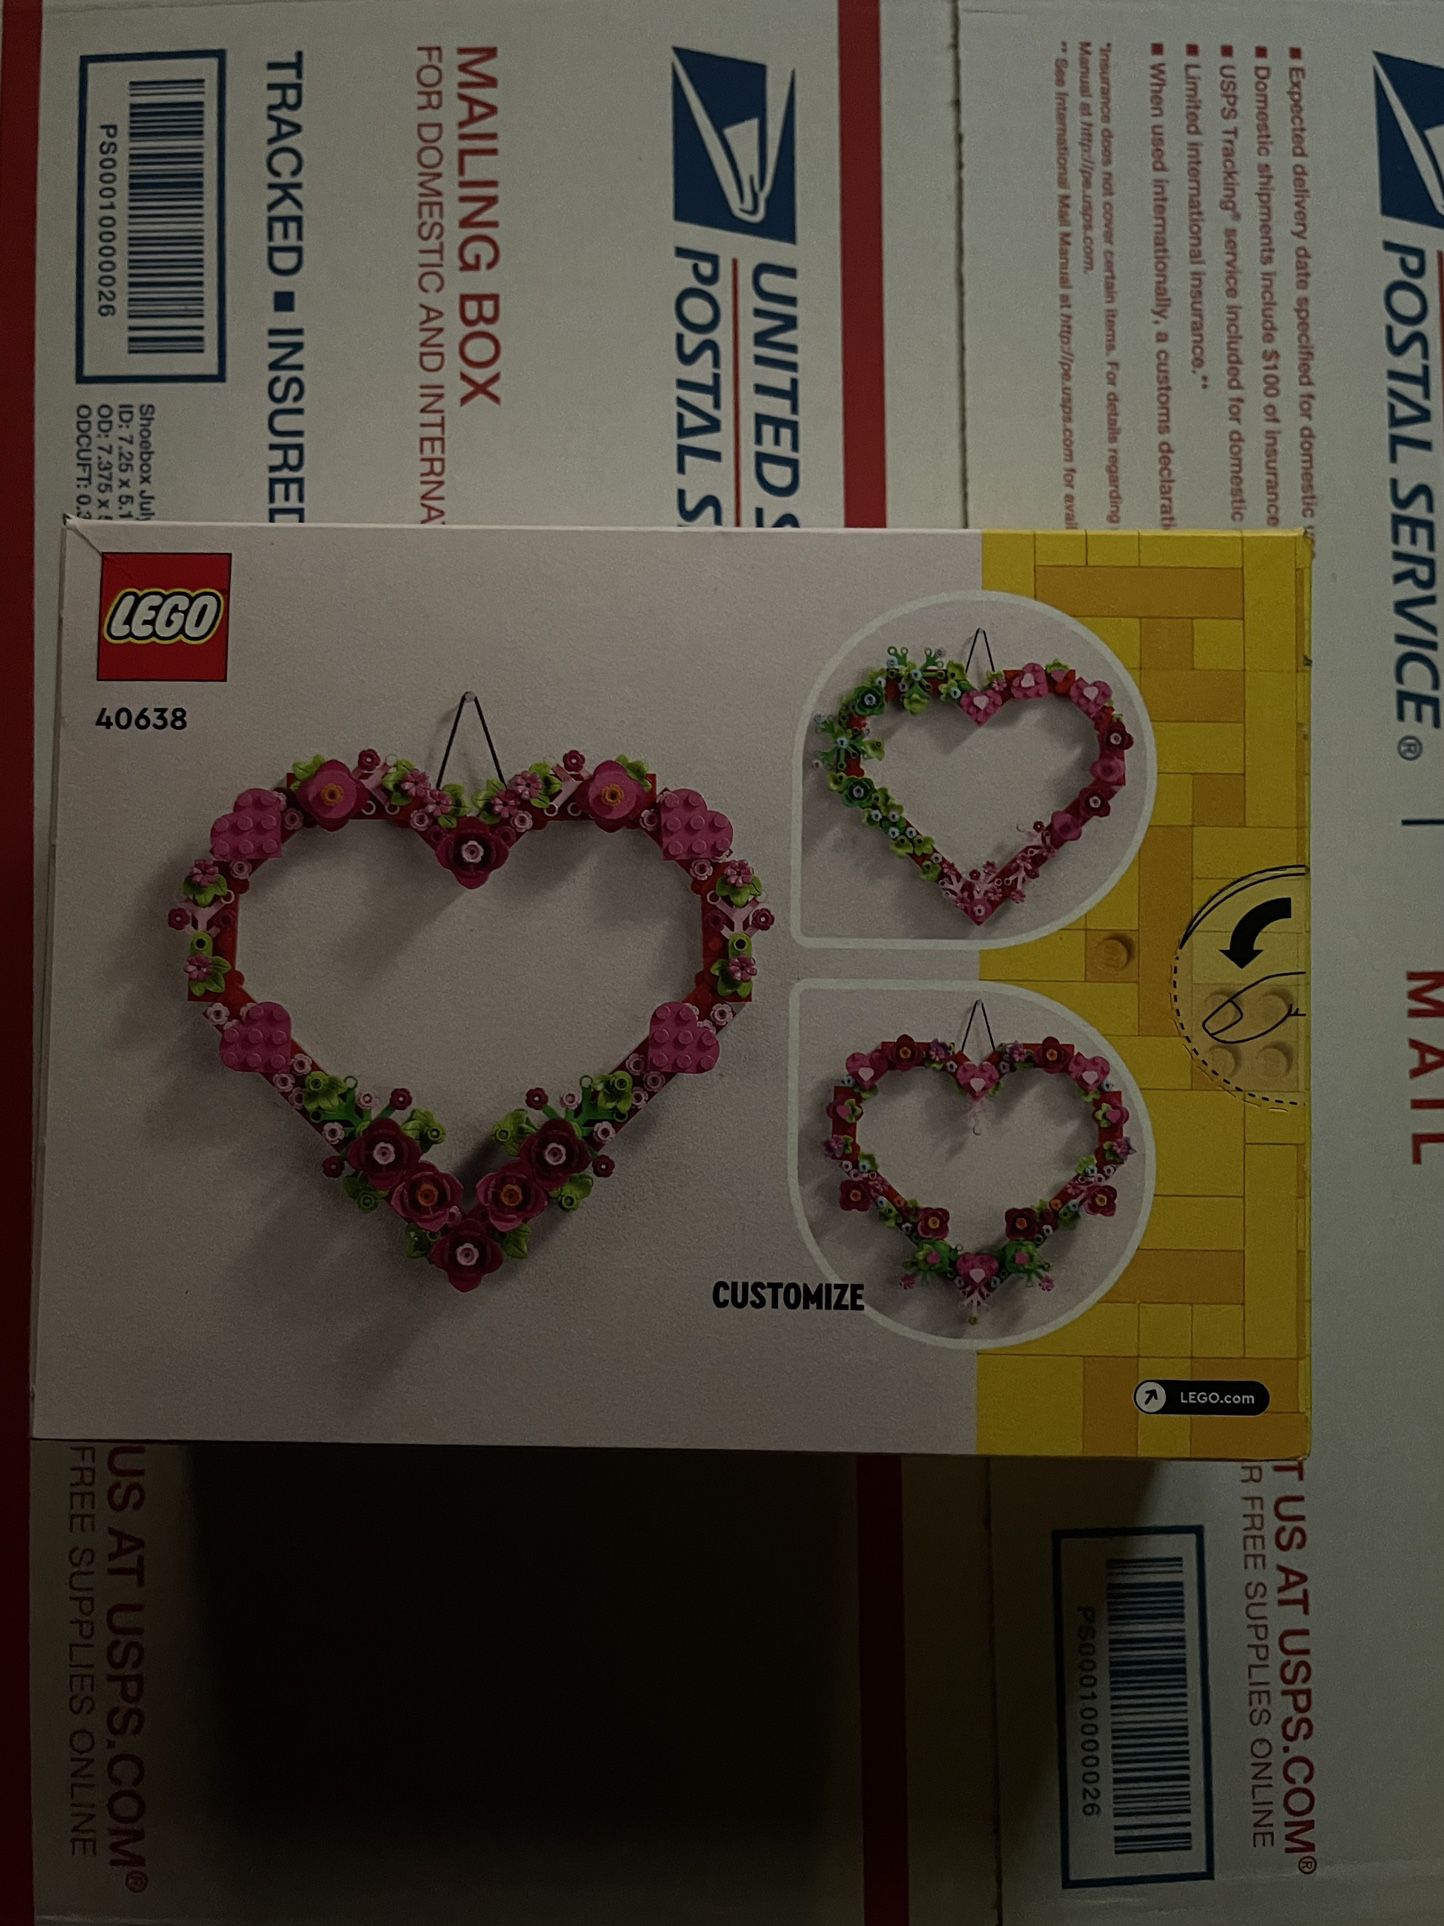 Lego Heart Ornament 40638 for Sale in Phoenix, AZ - OfferUp